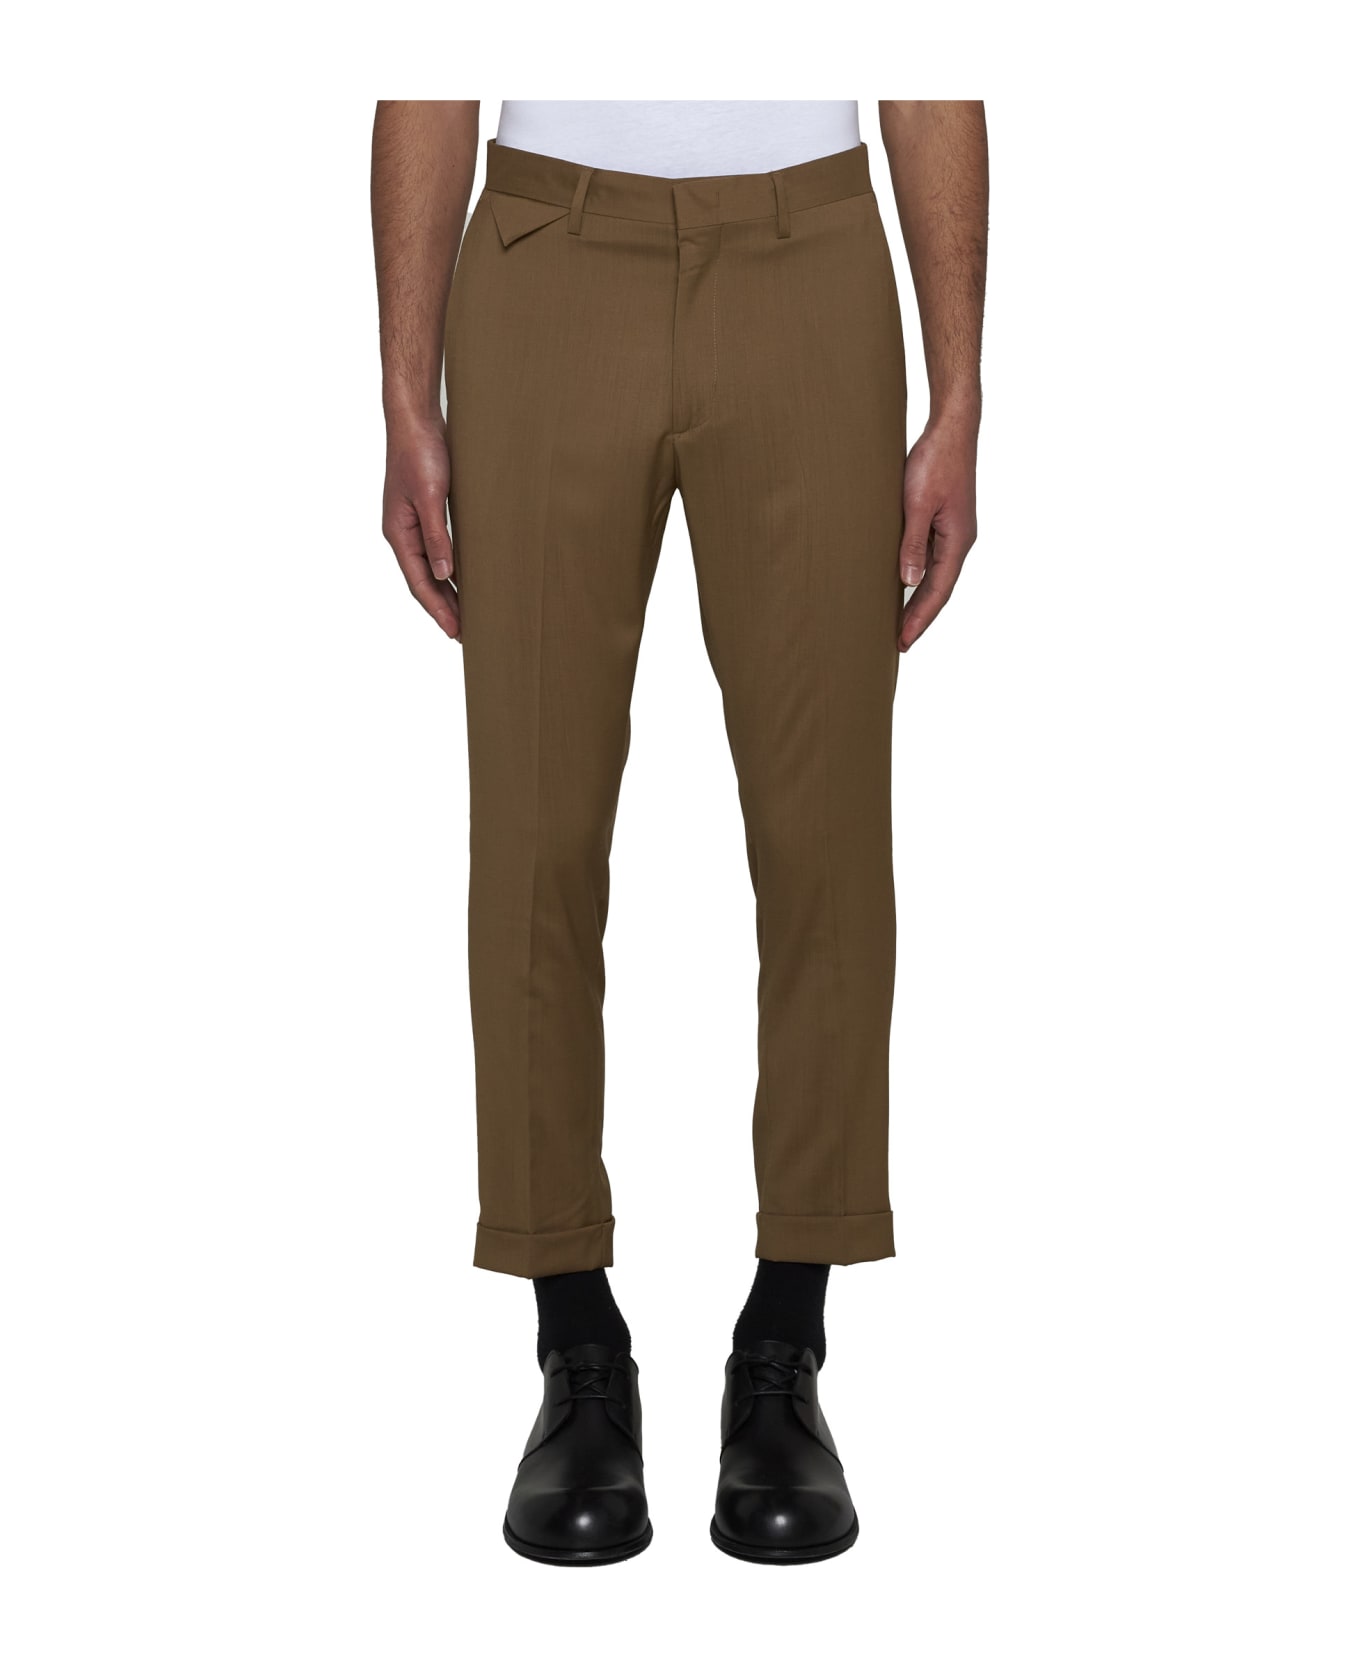 Low Brand Pants - Safari